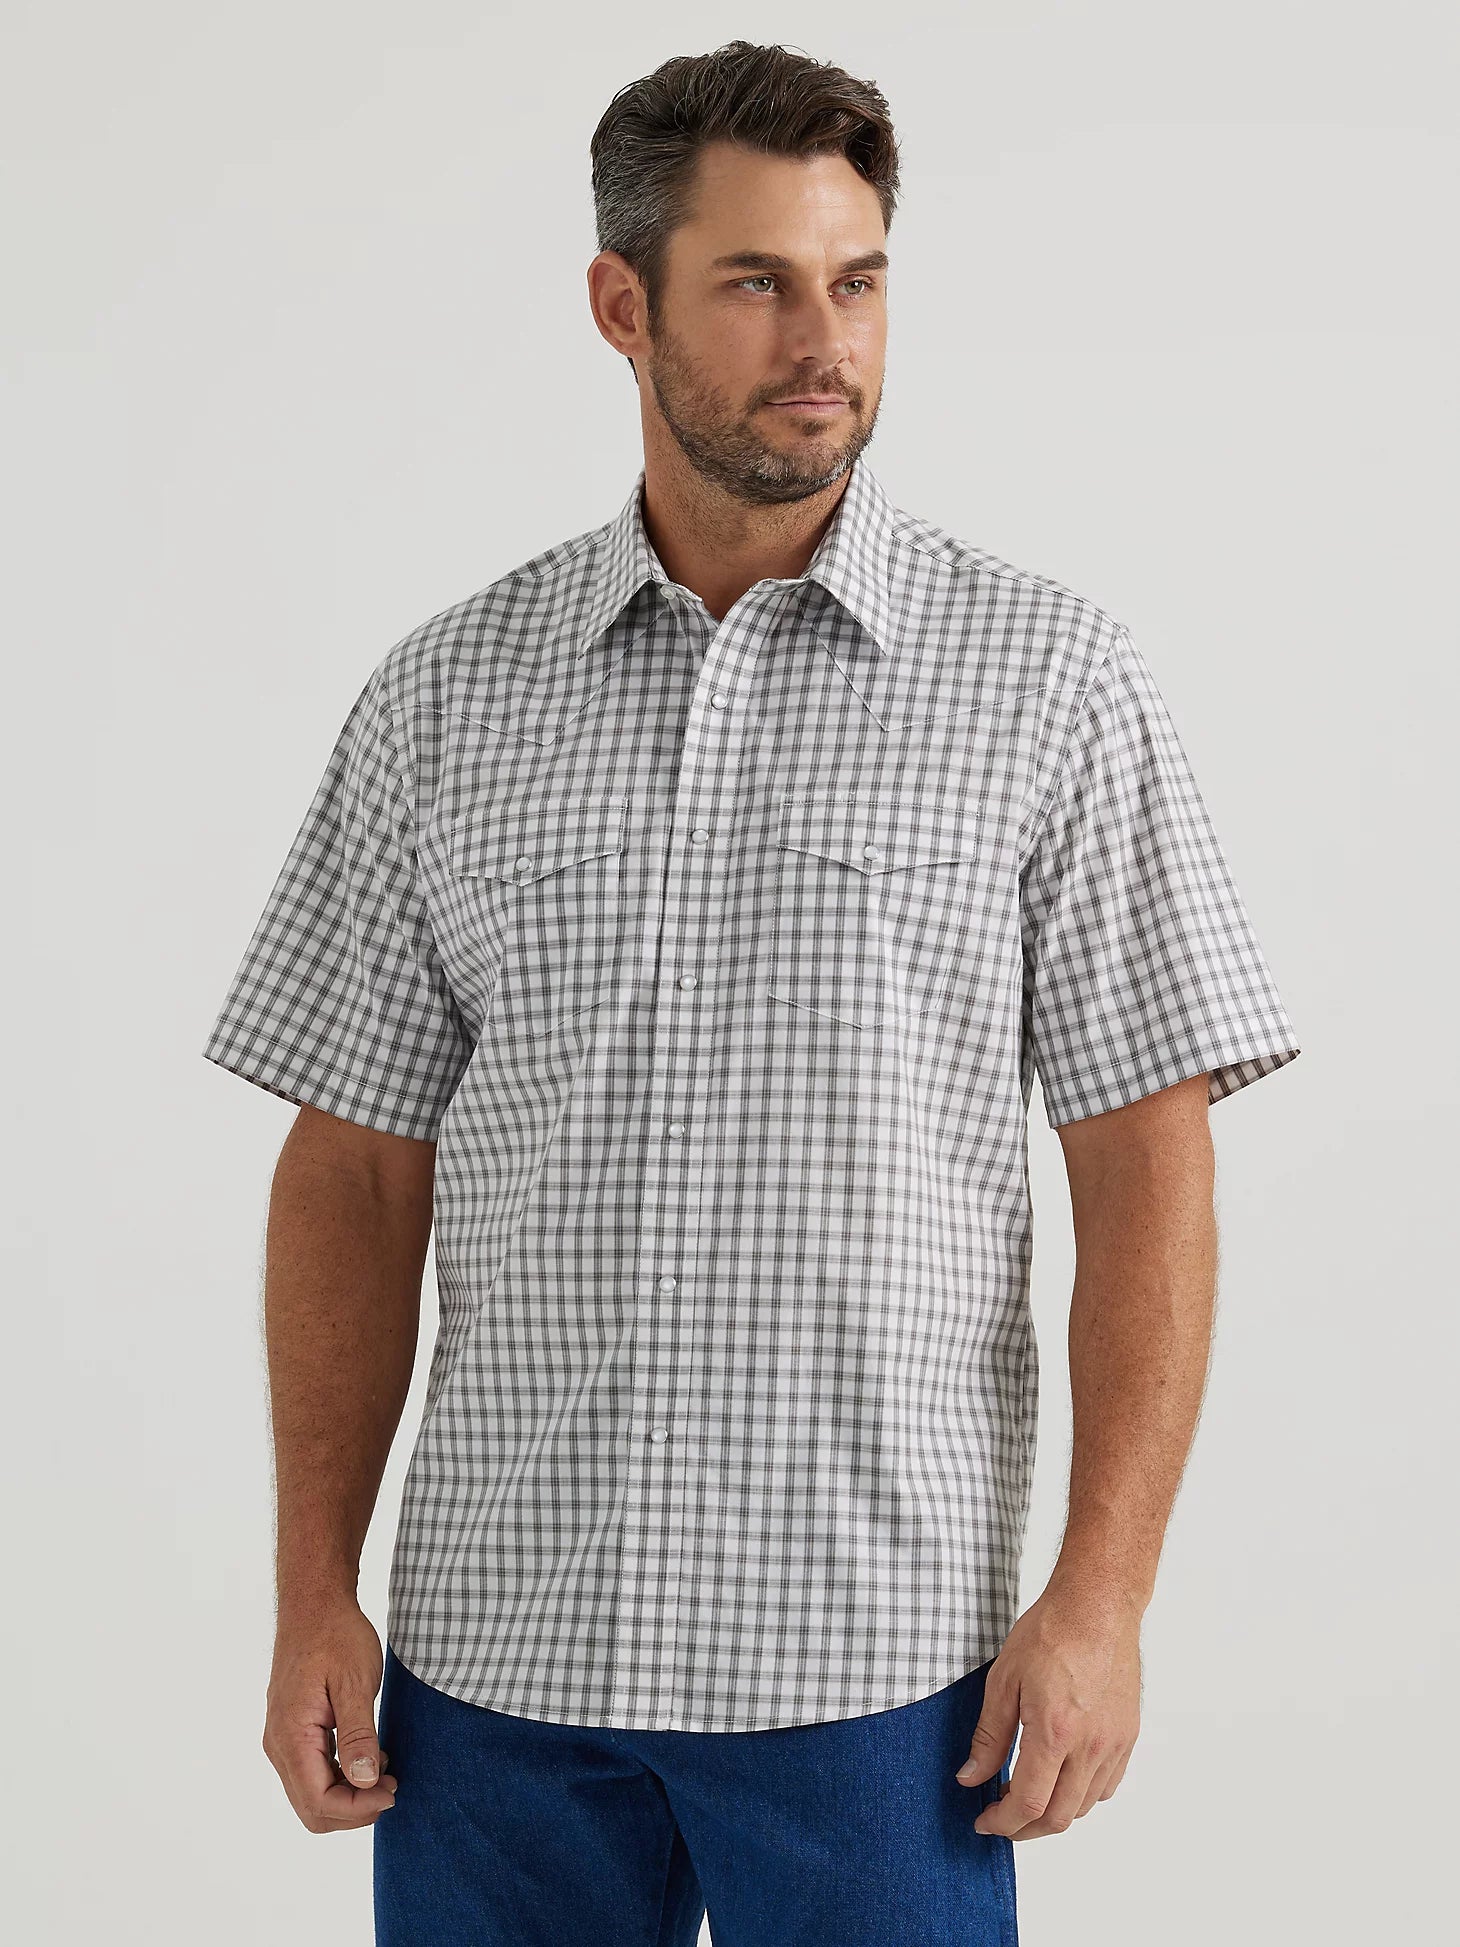 Wrangler Men's Wrinkle Resist Plaid Shirt